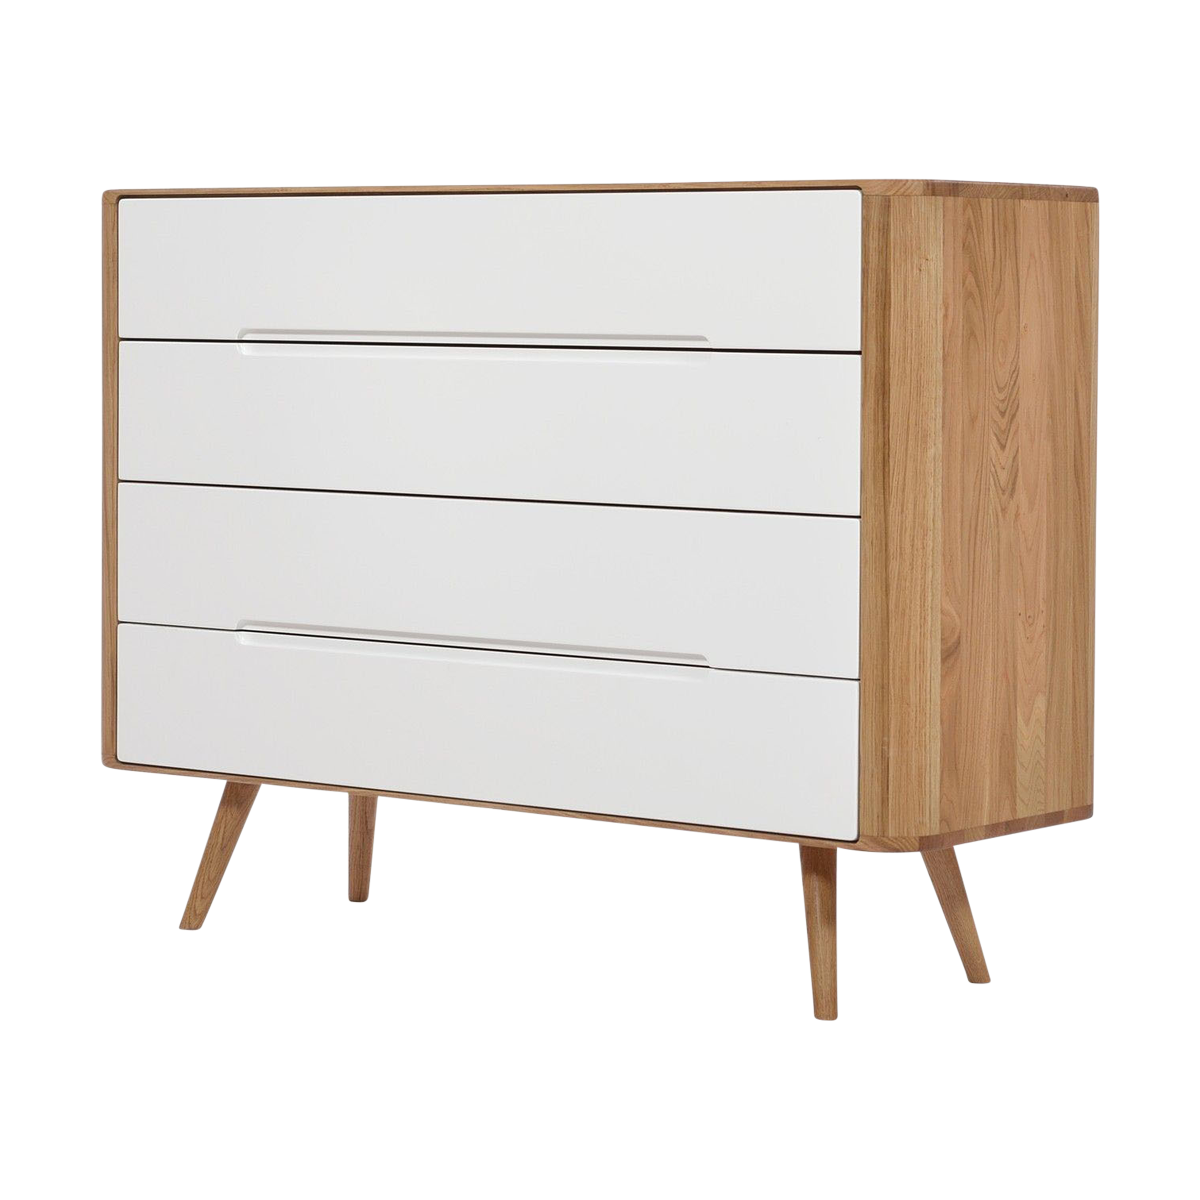 Ena drawer 120 - 4 drawers houten ladekast naturel - 120 x 90 cm